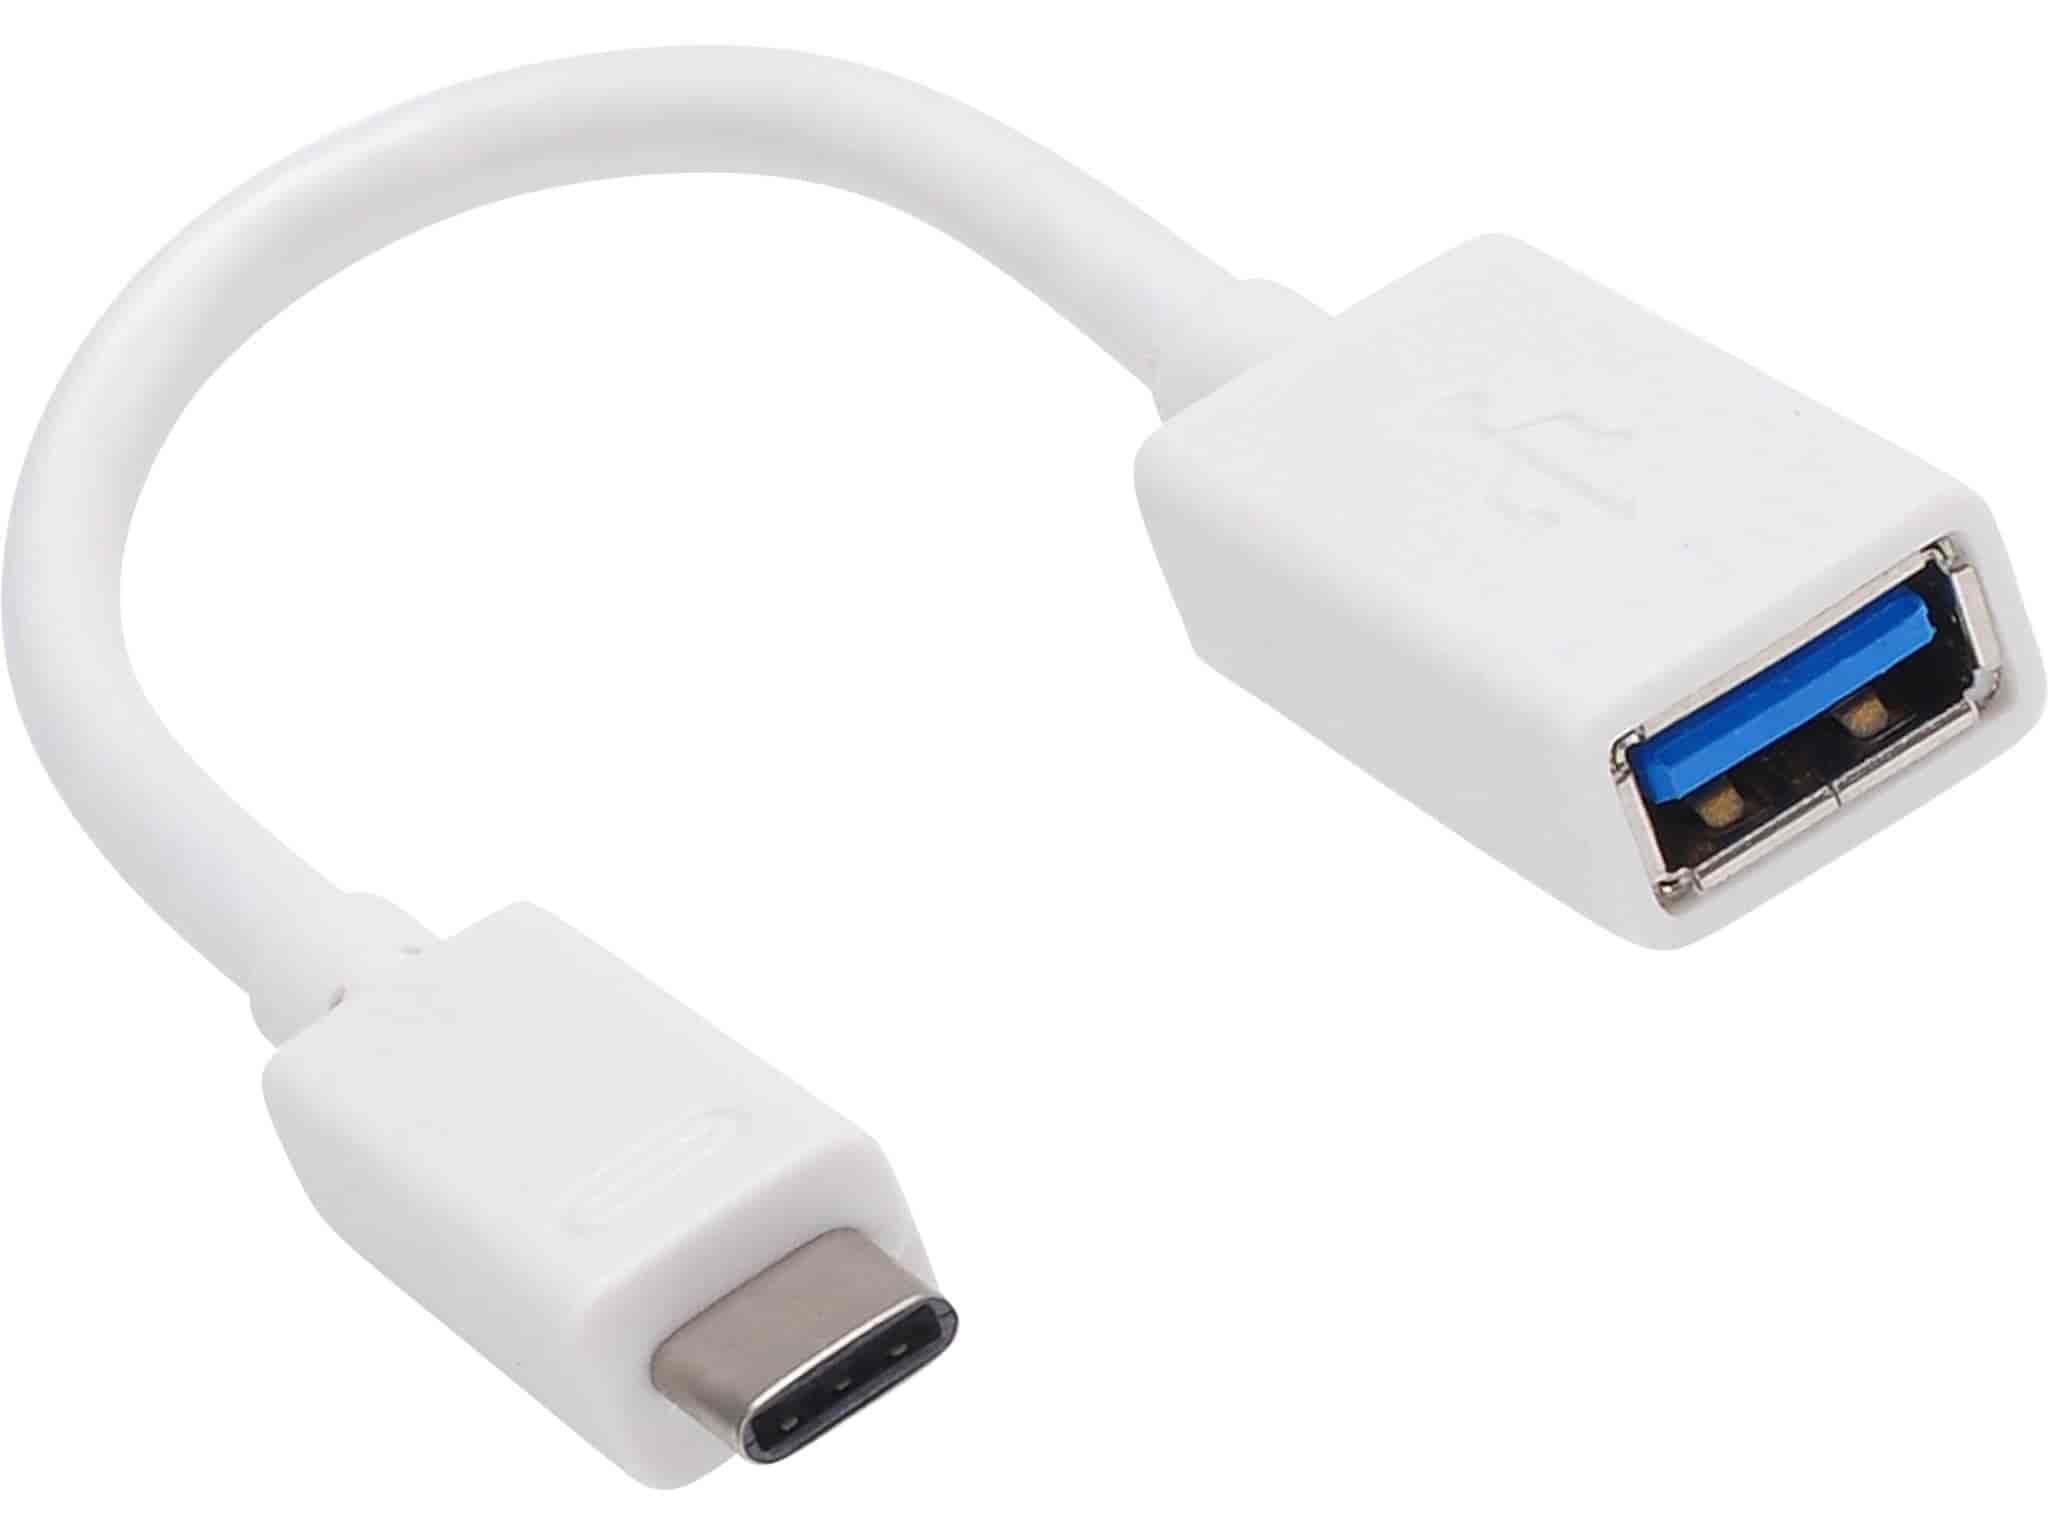 Sandberg USB-C to USB 3.0 Converter. Tilslut alt dit USB A udstyr til USB-C port